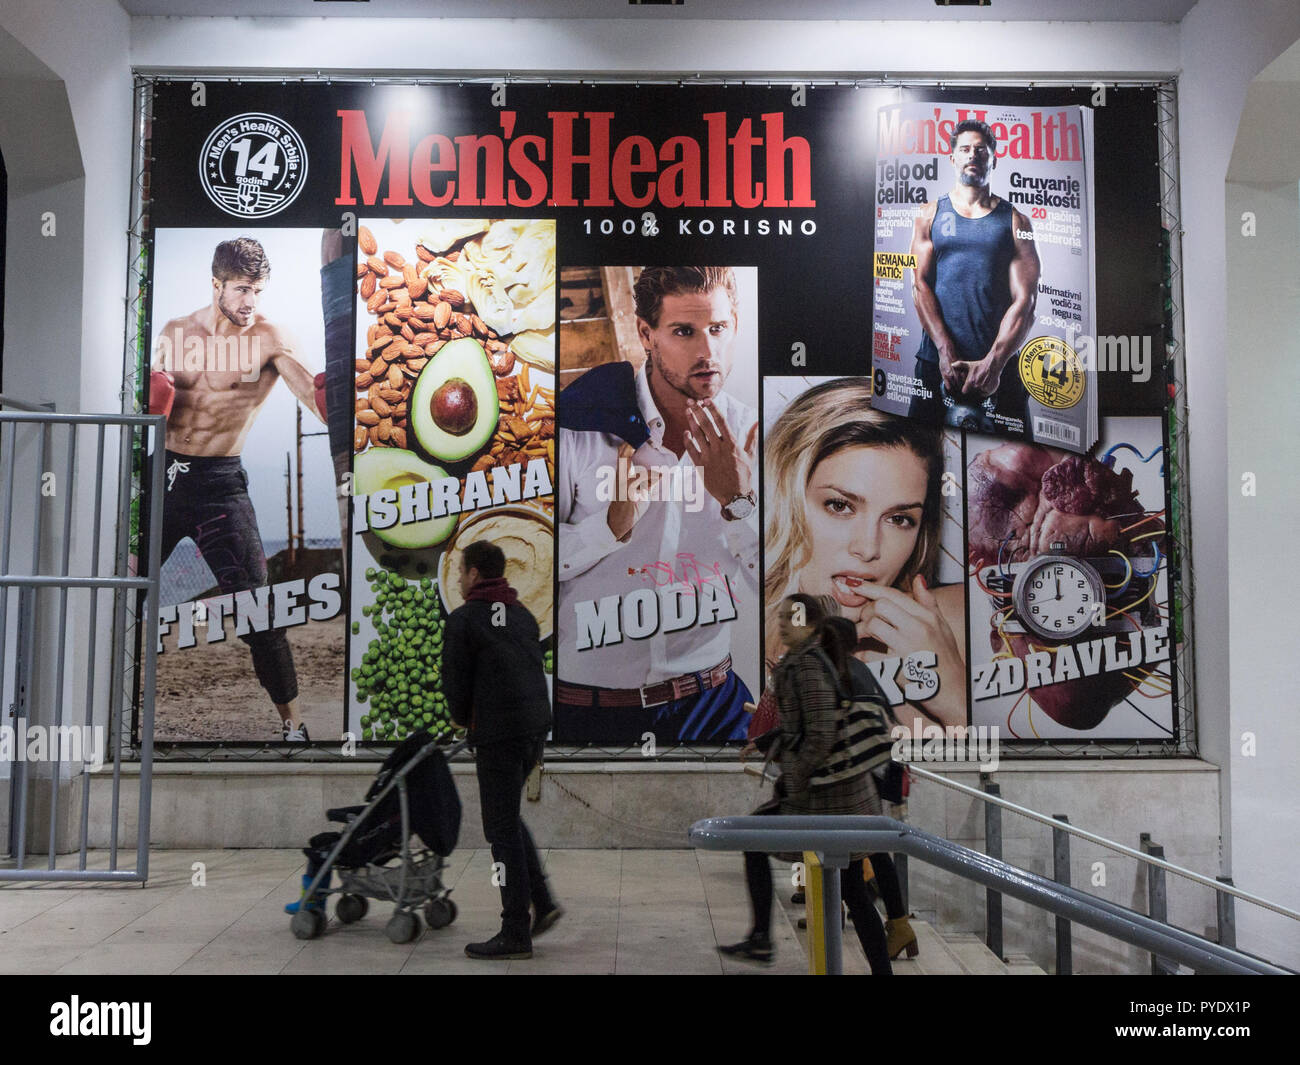 BELGRADE, SERBIE - 25 octobre 2018 : la santé des hommes et la libération du logo sur un panneau publicitaire pour l'édition serbe. C'est la plus grande de l'homme lifetyl Banque D'Images